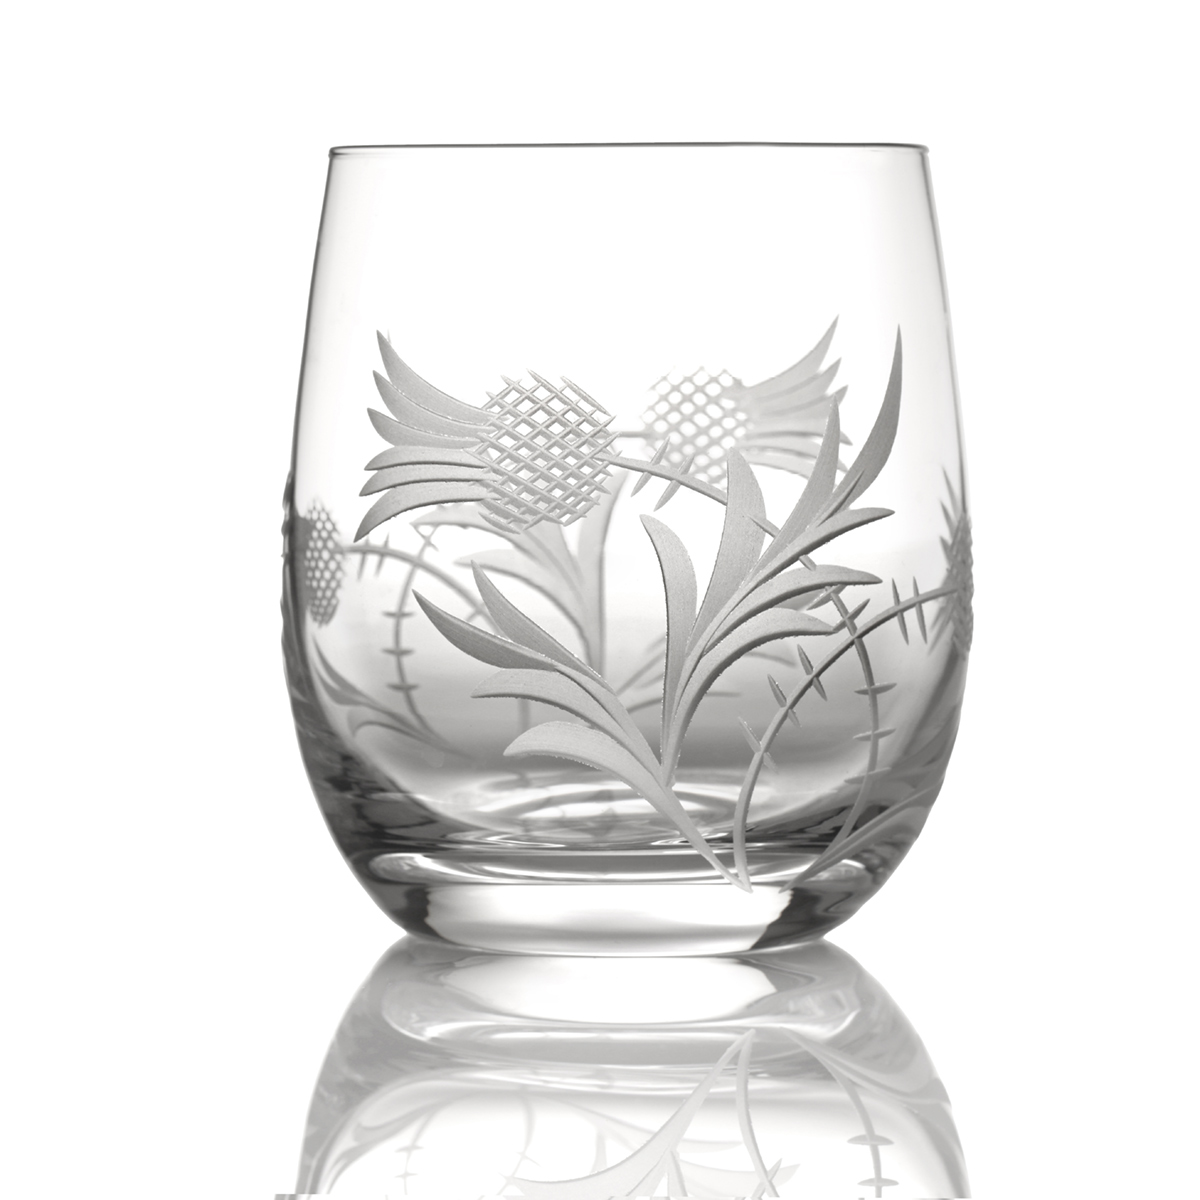 2 x Flower of Scotland Barrel Tumbler - Kristall Whiskyglas mit Distelschliff aus Schottland